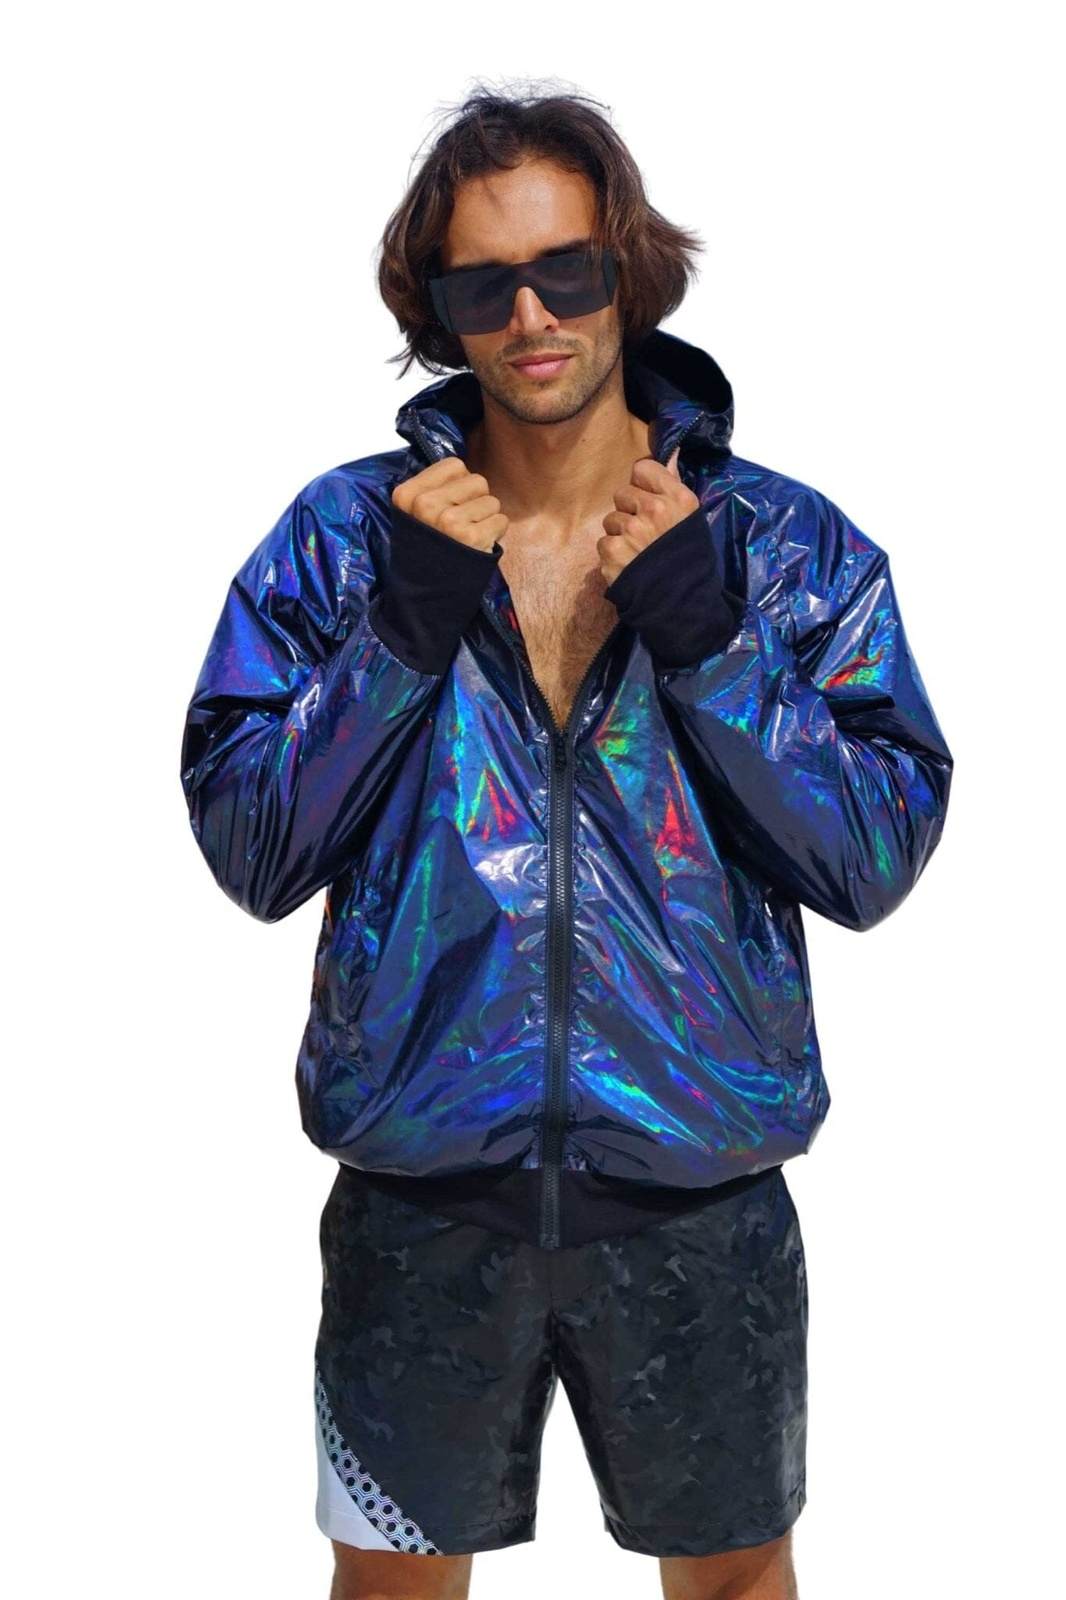 regenval Historicus accent Mens Waterproof Festival Jacket | Love Khaos Streetwear & Rave wear